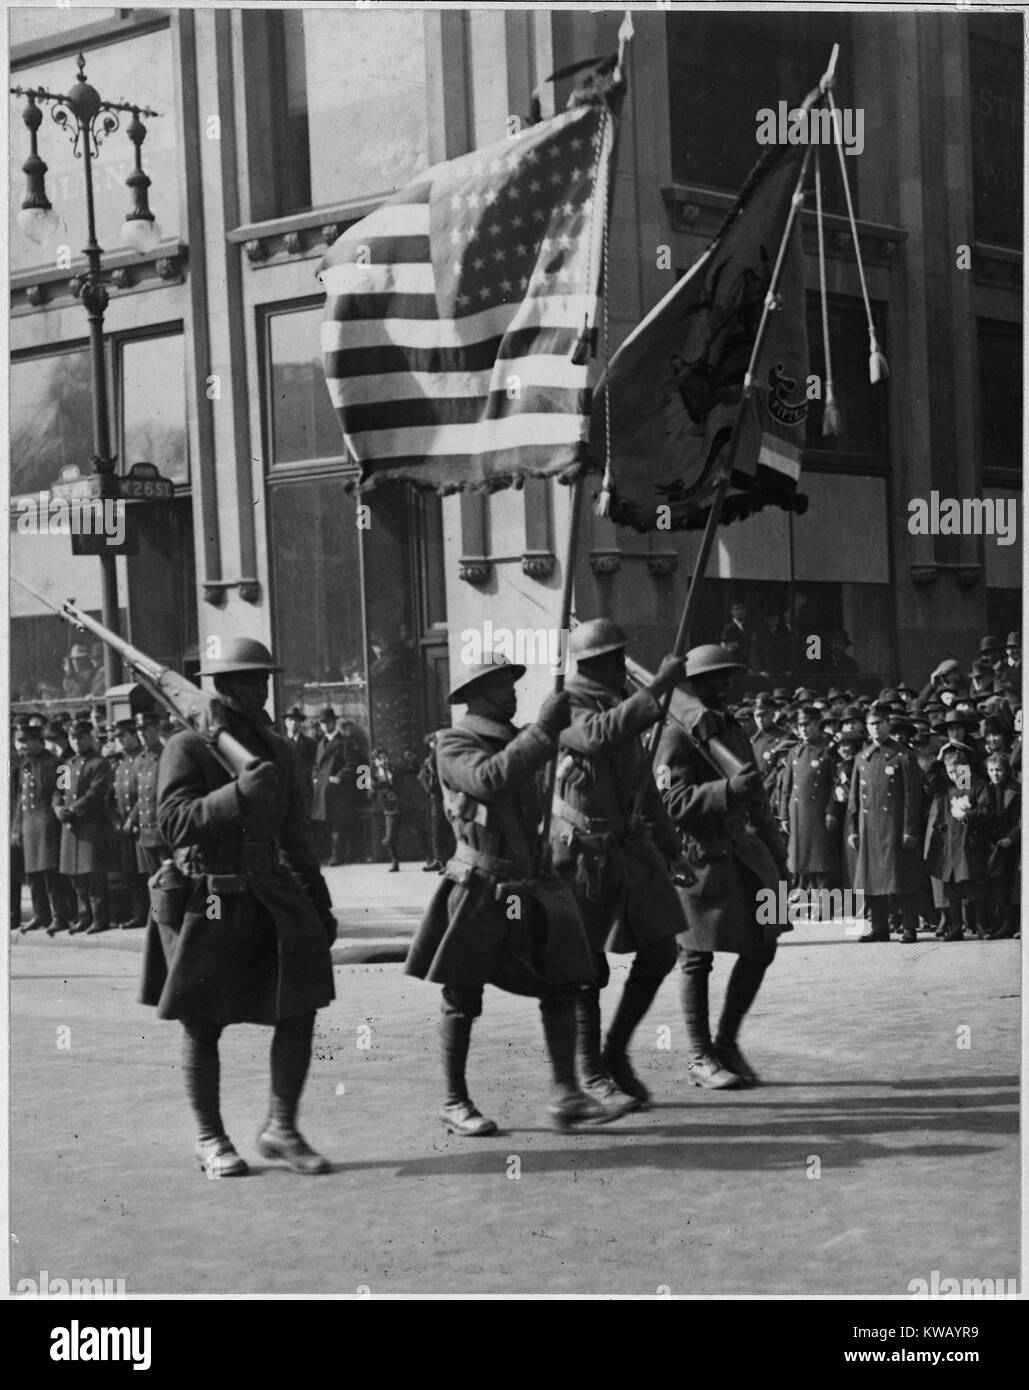 Quattro americano africano gli uomini in uniforme a piedi in formazione sulla strada portando bandiere e pistole durante la sfilata di un corteo per il famoso 369 Fanteria dopo il ritorno dalla Francia, New York New York, 1919. Immagine cortesia archivi nazionali. Foto Stock